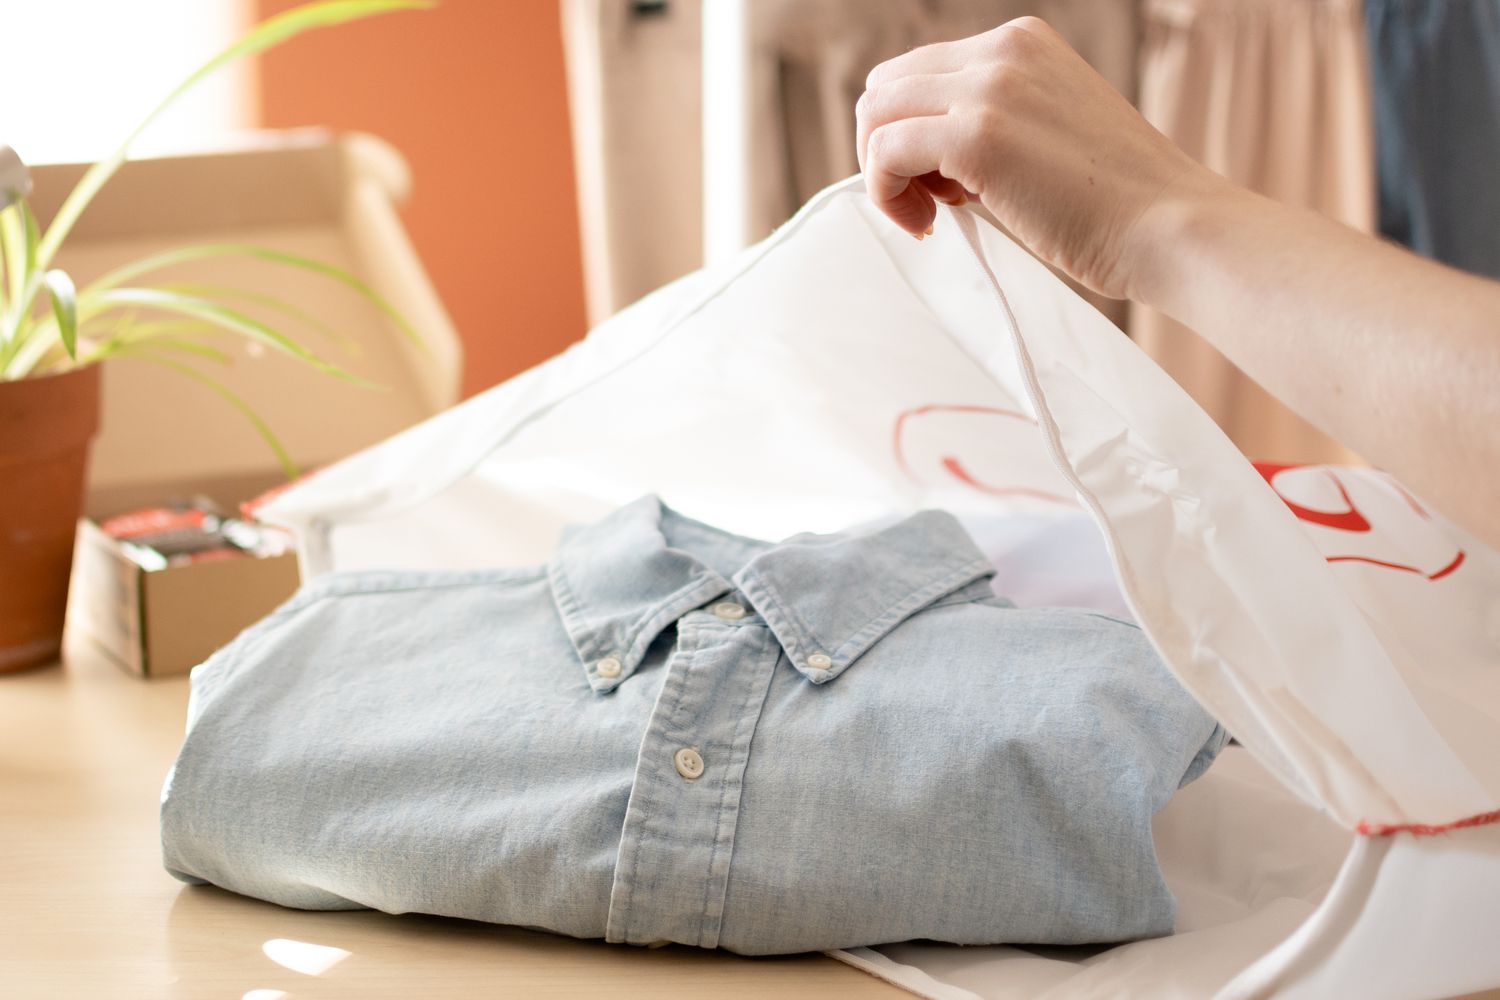 Camisa de botão dobrada e colocada em um saco de secagem para a máquina de secar